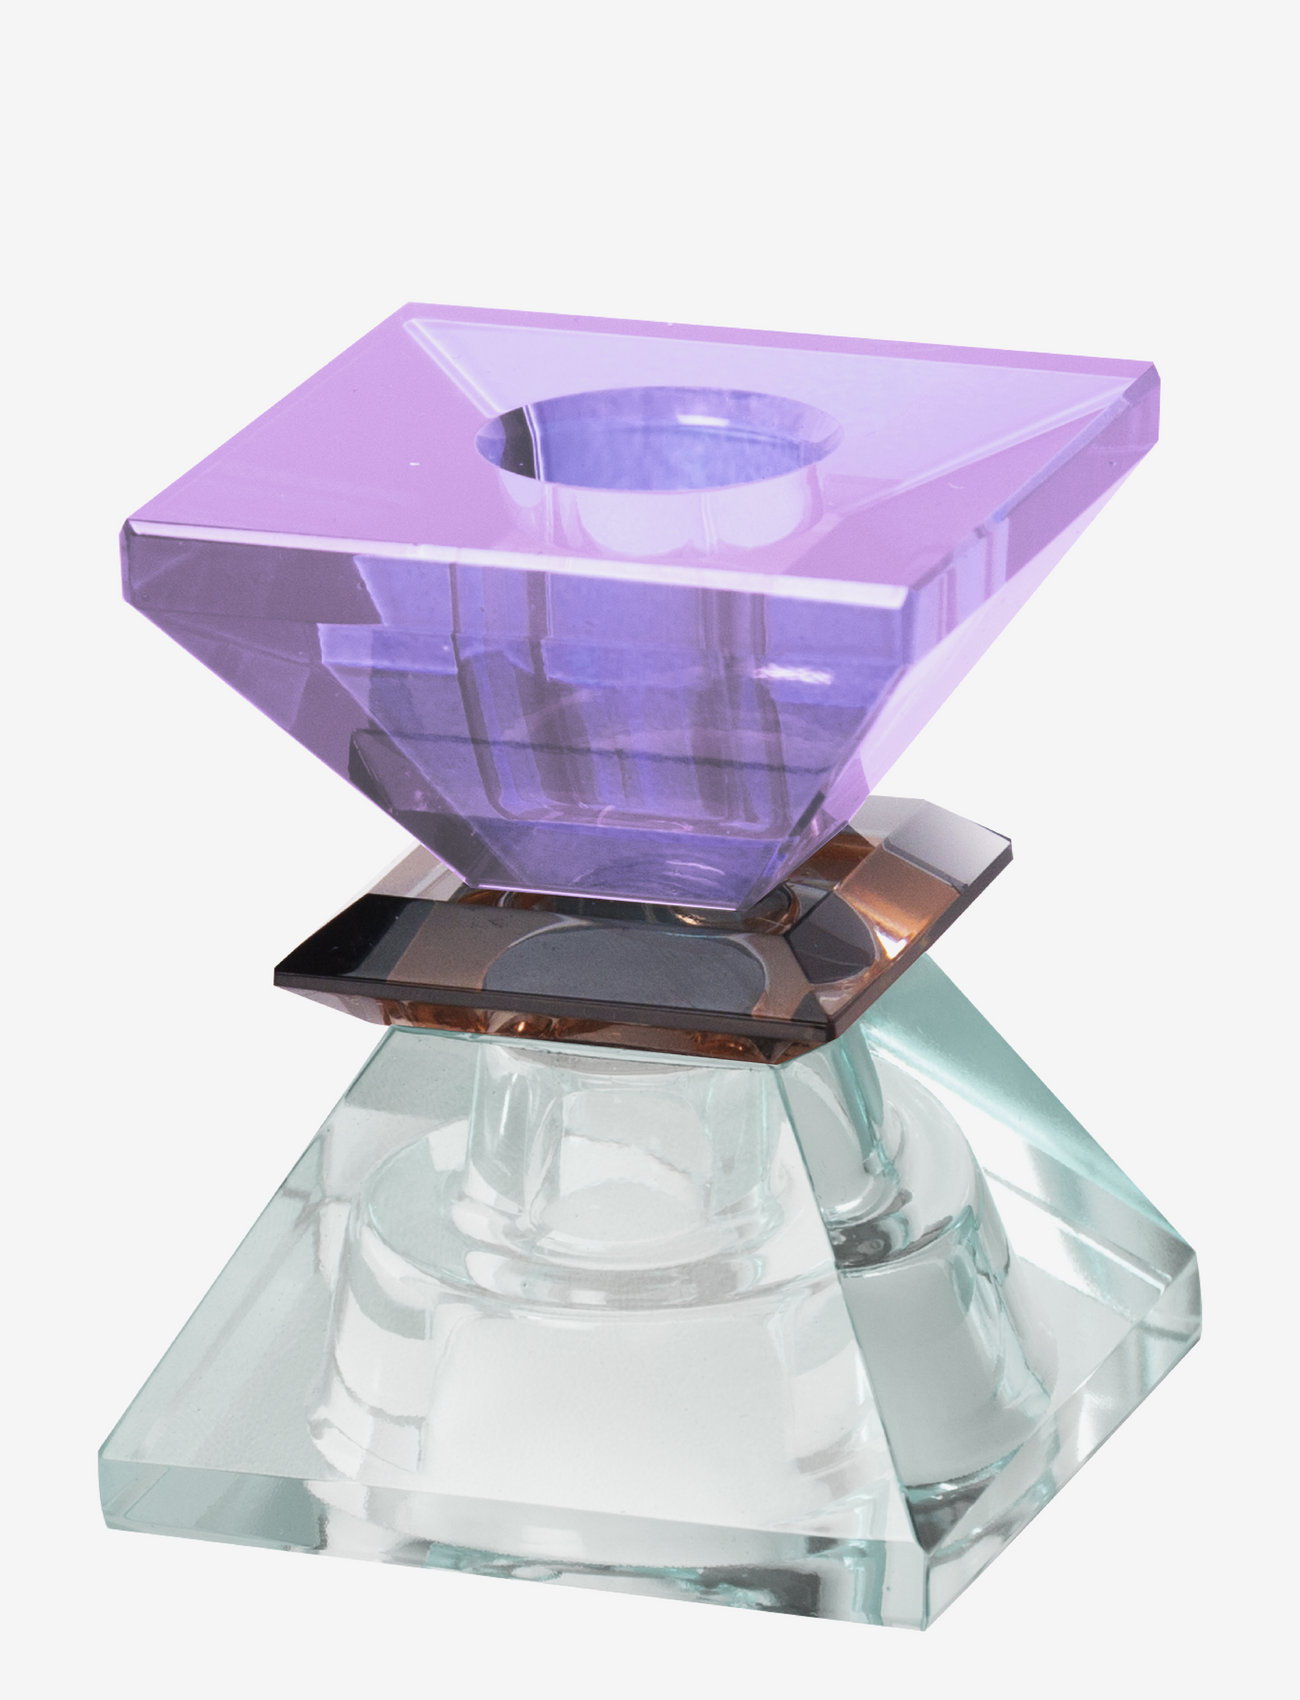 C'est Bon - Crystal candle holder - lowest prices - light mint/dark brown/violet - 1